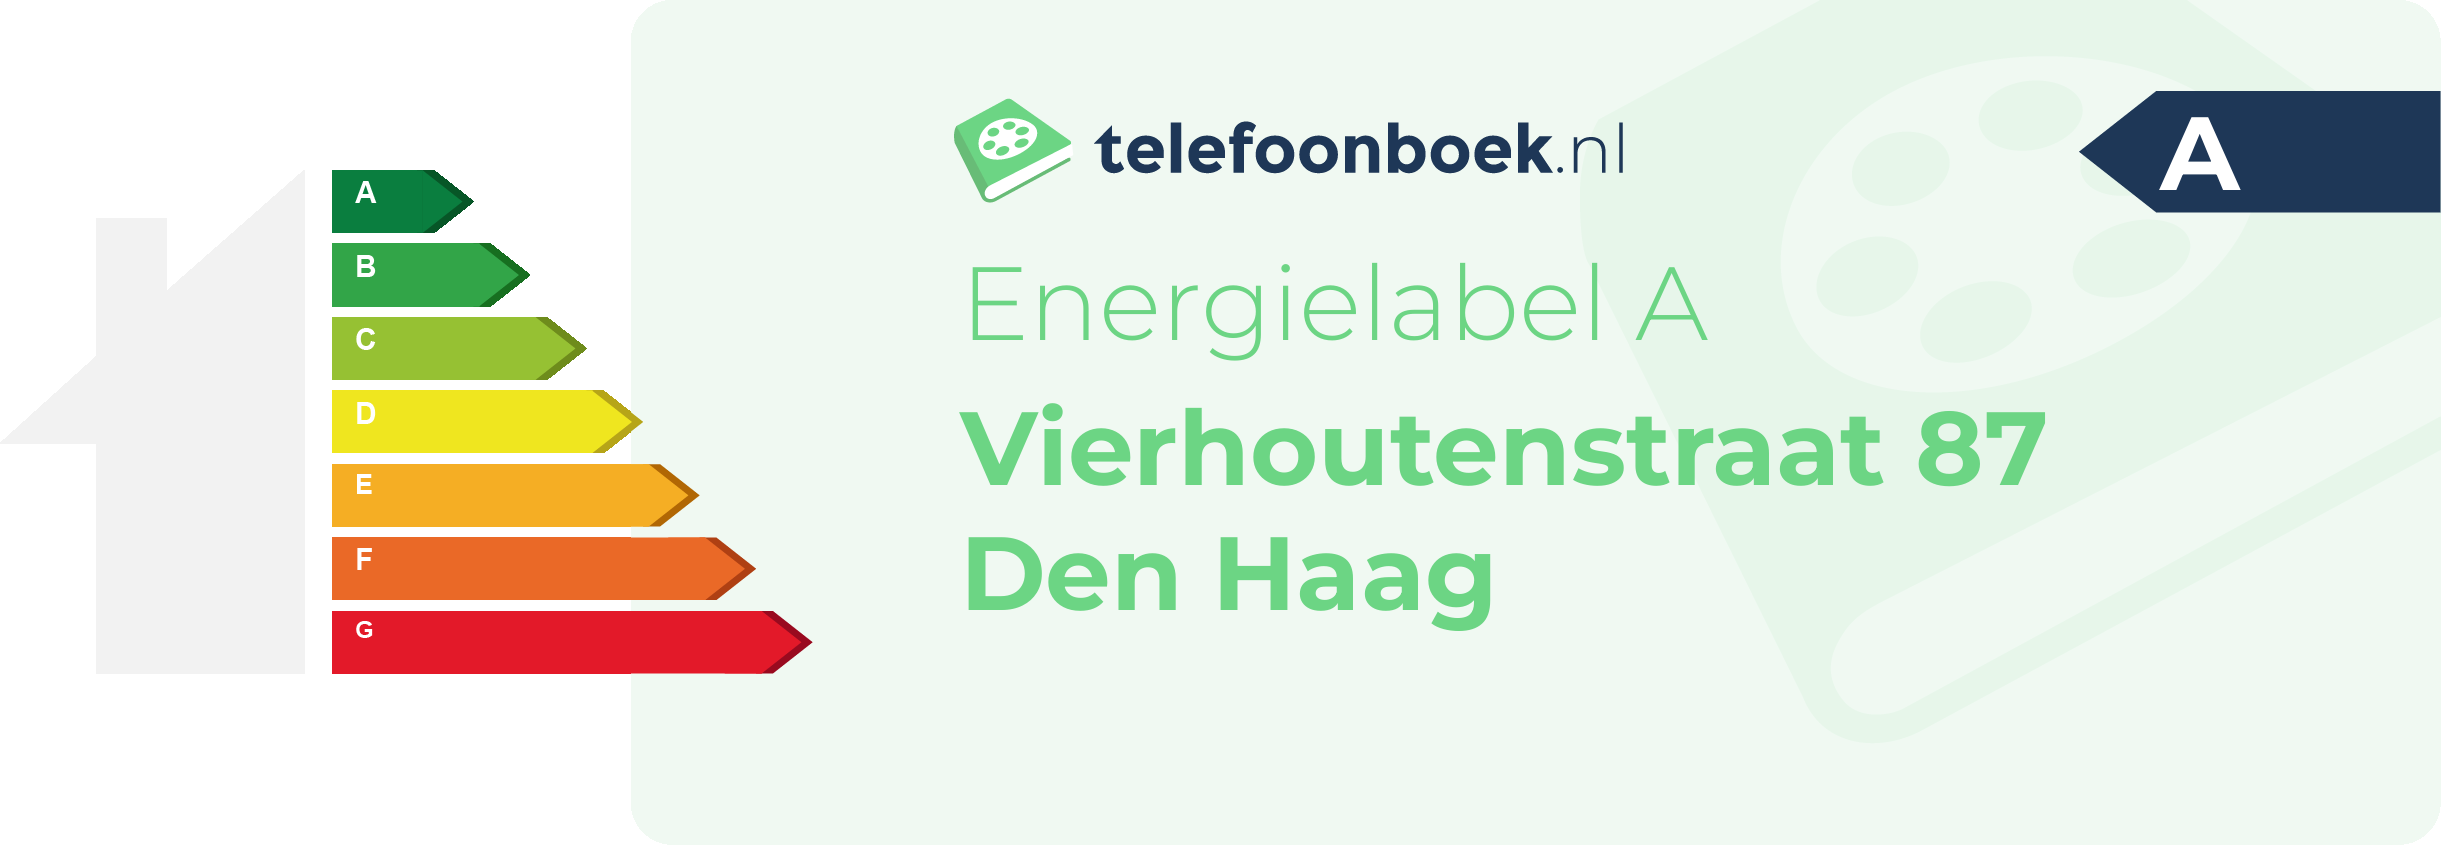 Energielabel Vierhoutenstraat 87 Den Haag